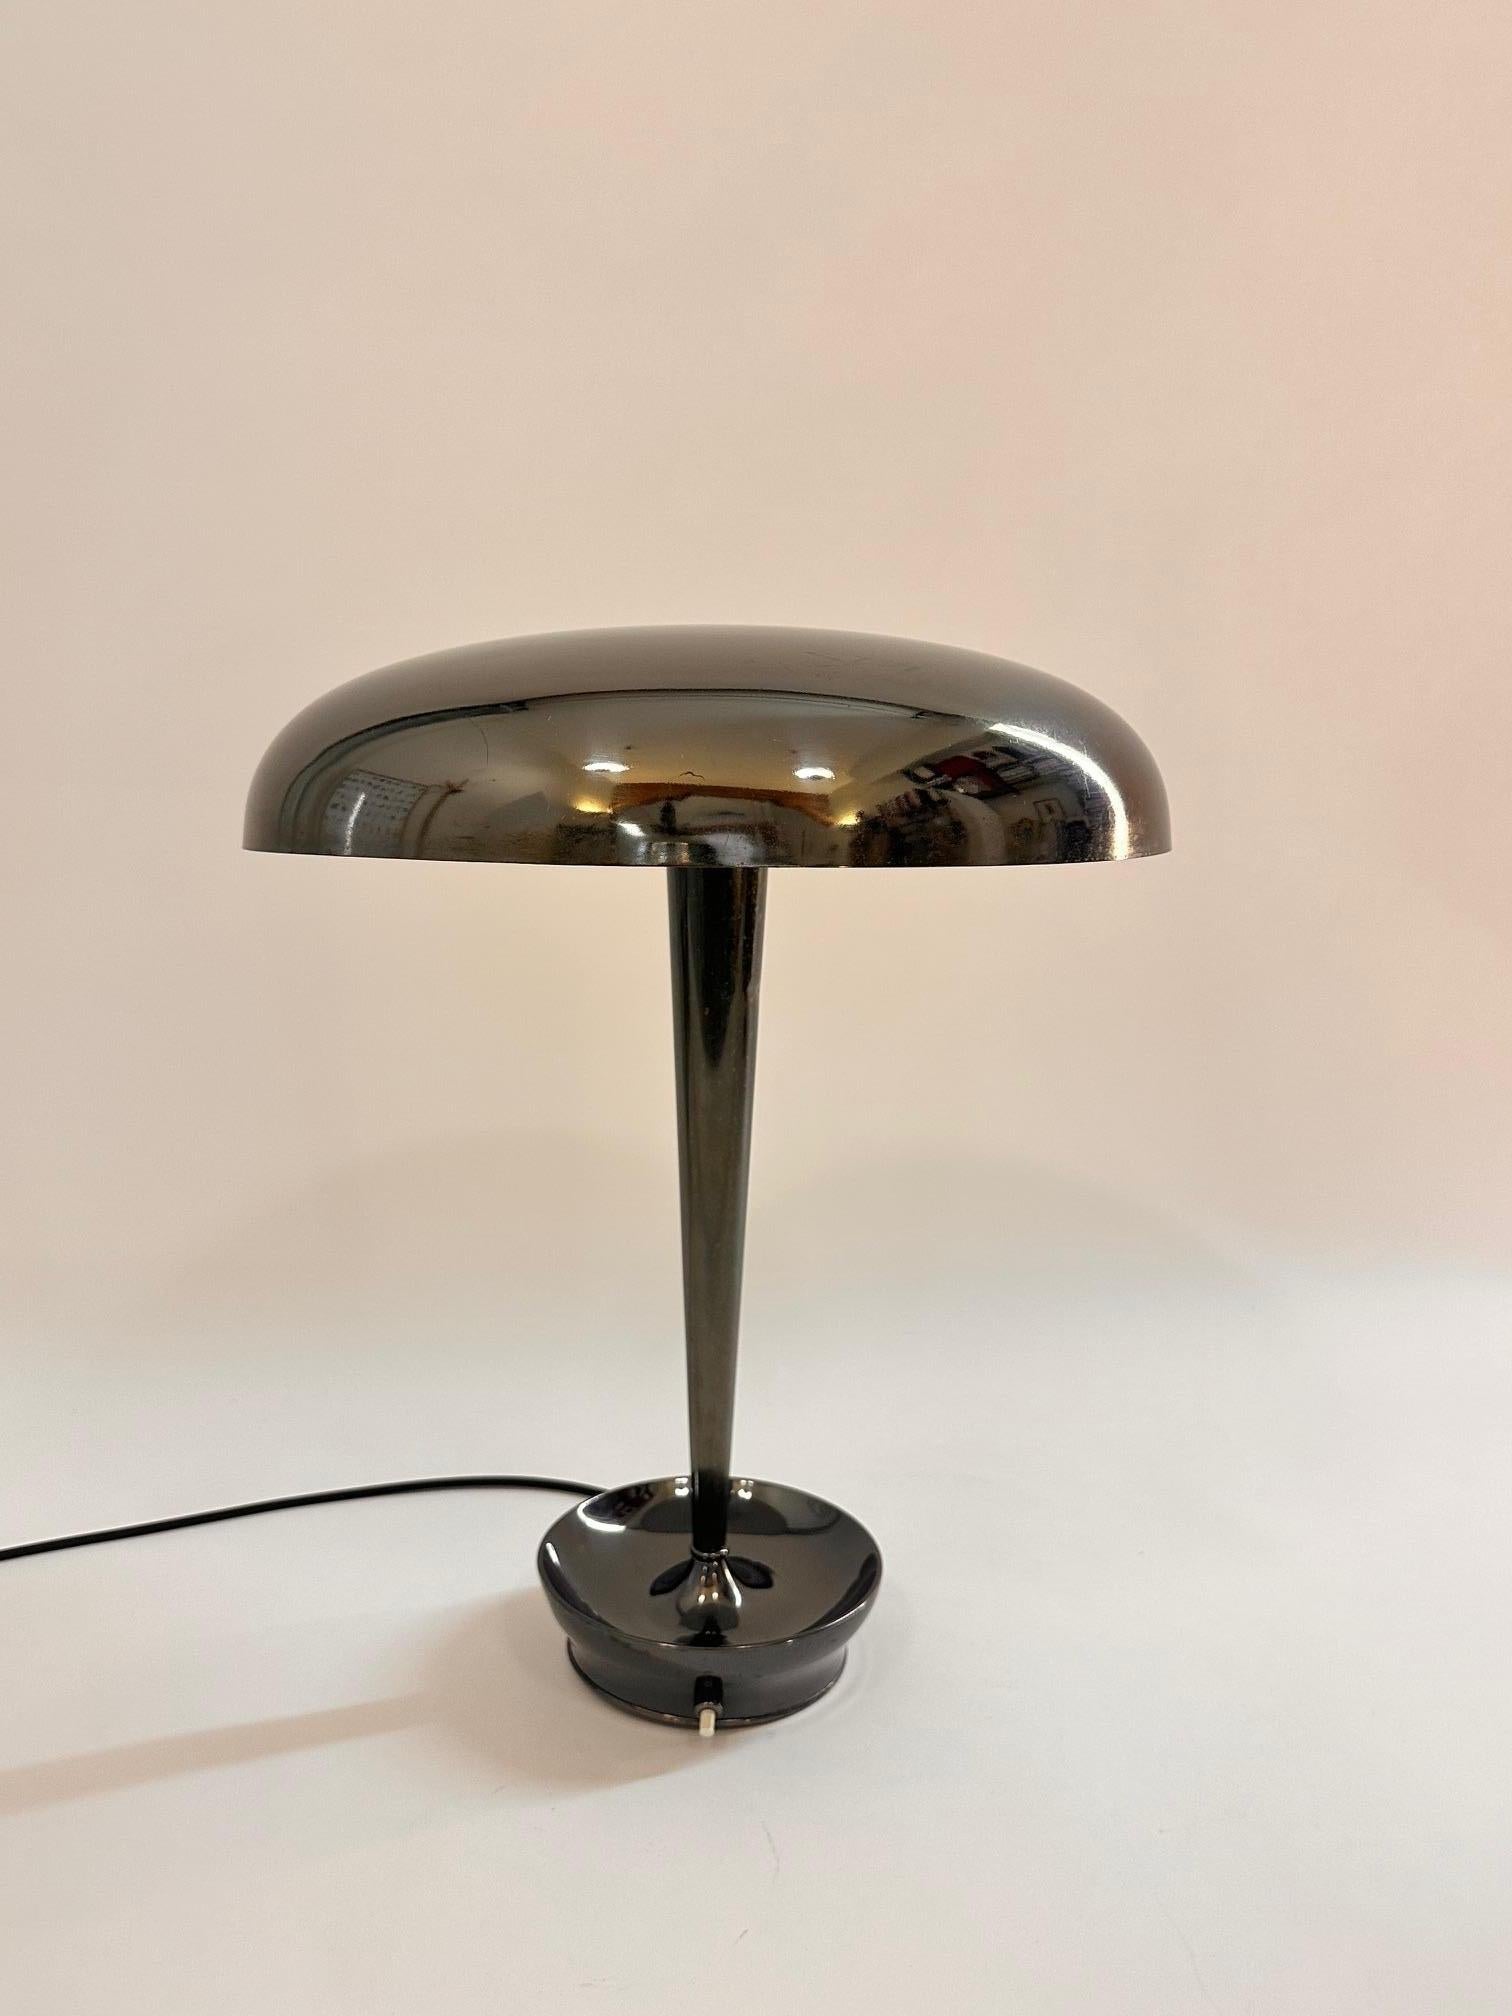 Eine originale Stilnovo Schreibtischlampe, Modell D. 4639, Messing patiniert, schwarz, sehr guter Zustand. Voll funktionsfähig, kostenloses Paket und Versand.
Literatur: 